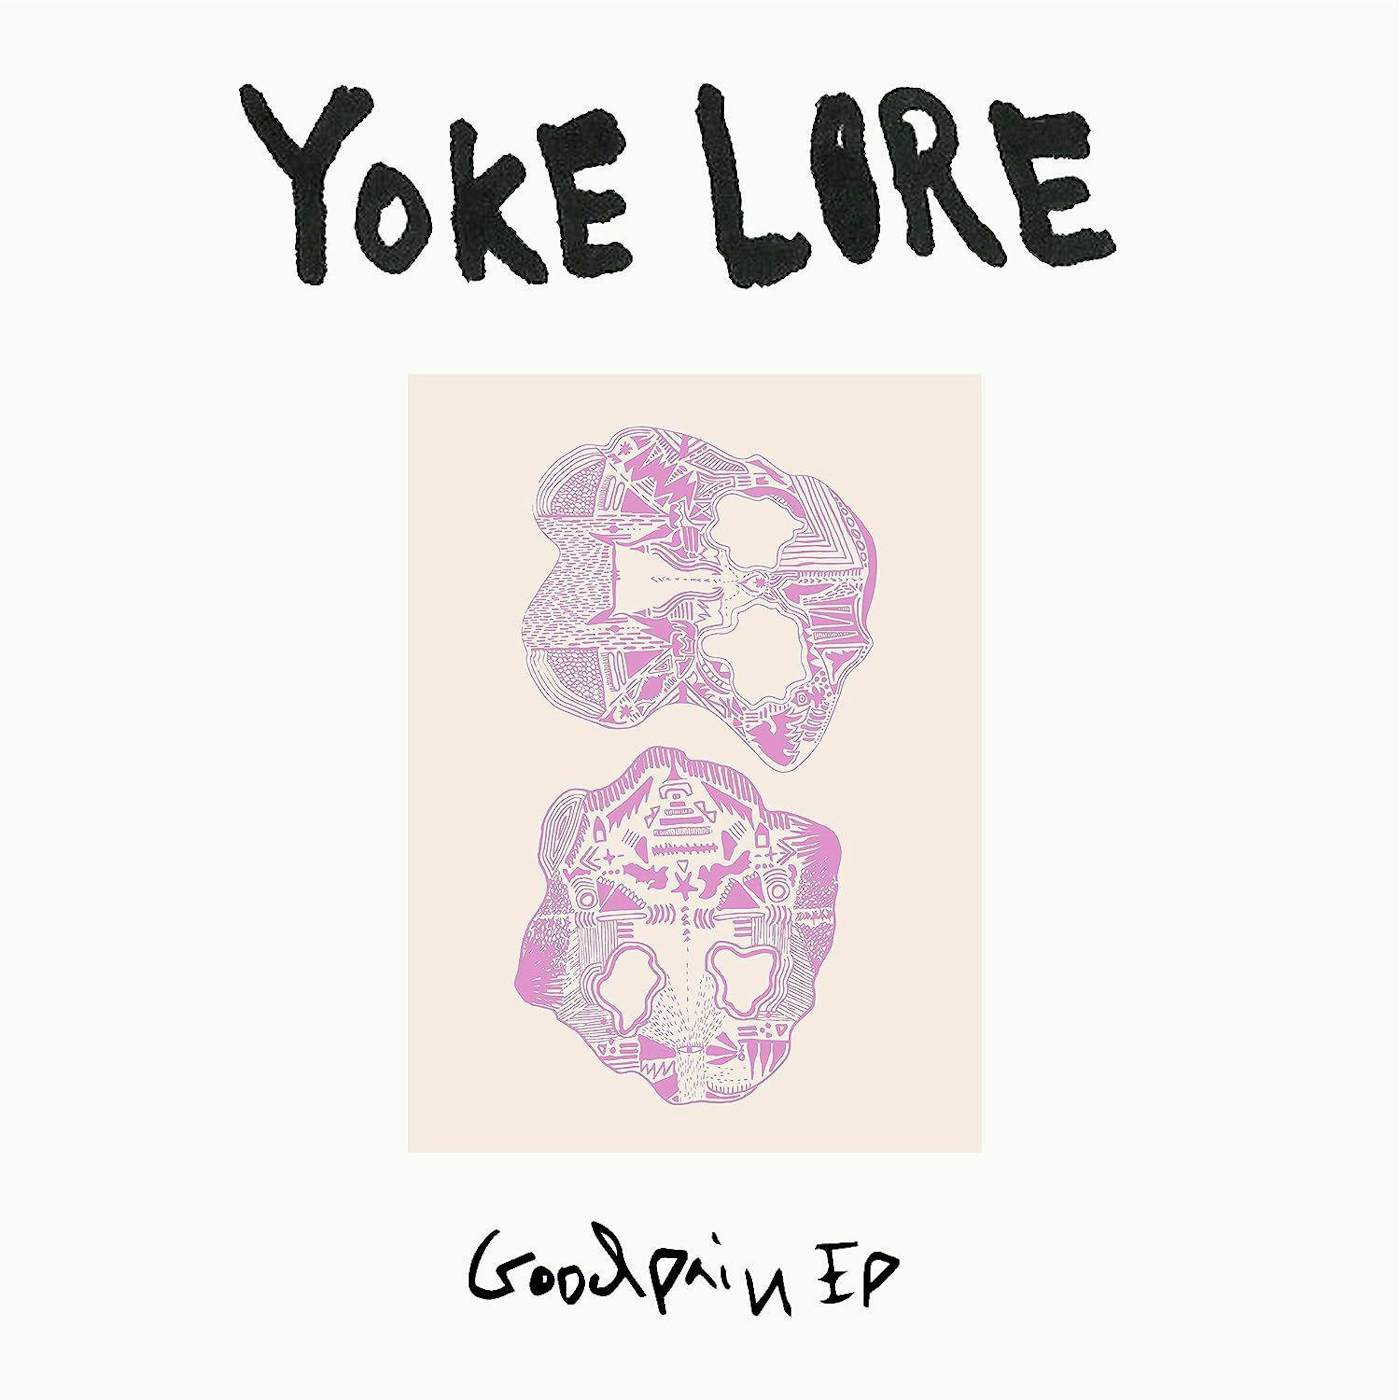 Yoke Lore Goodpain - Pink Vinyl Record